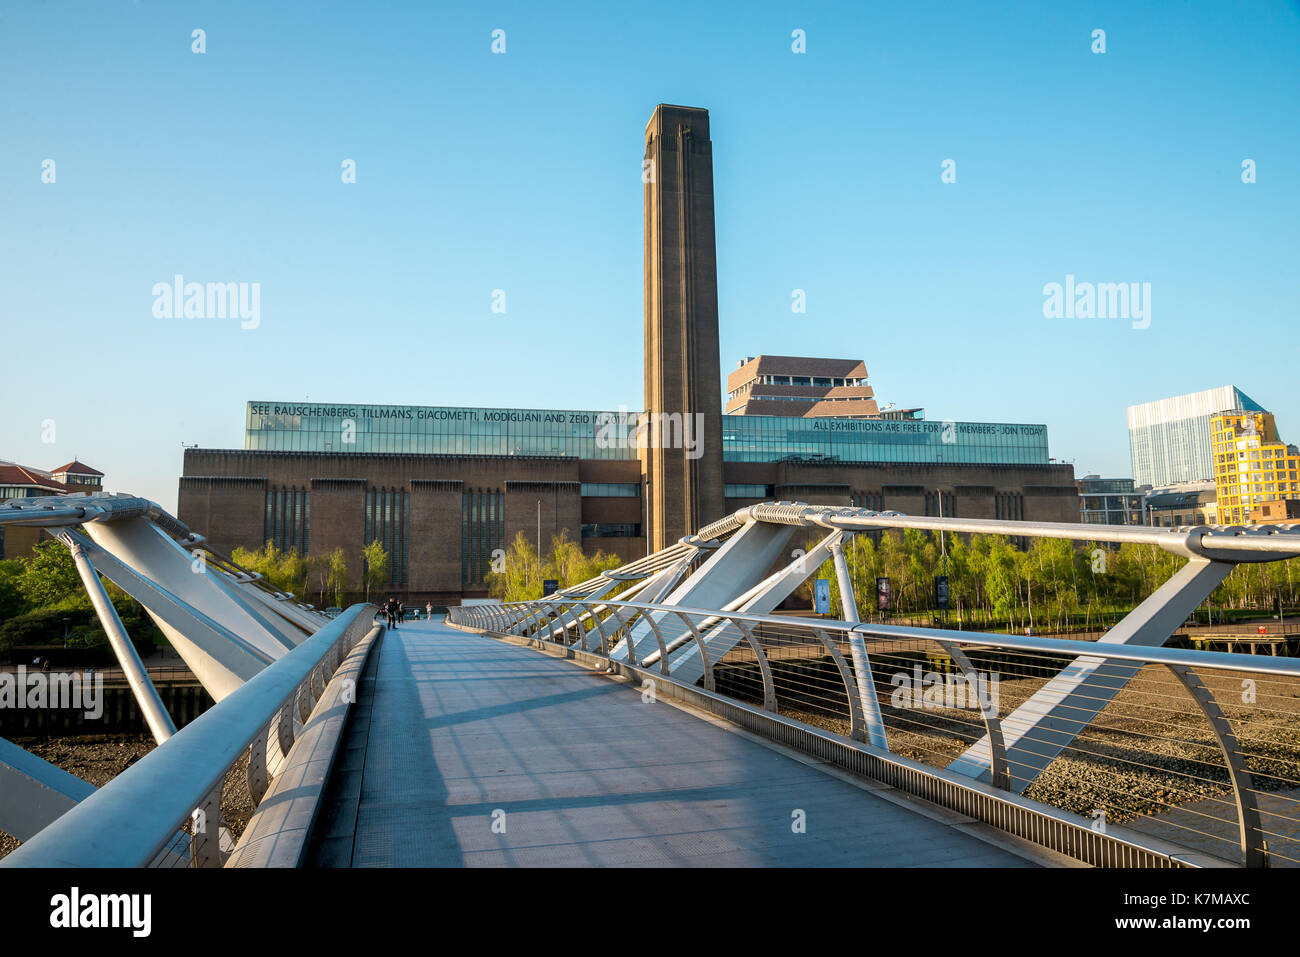 Tate Modern exhibition centre sulla riva sud del Tamigi, vista dal Millennium bridge Foto Stock